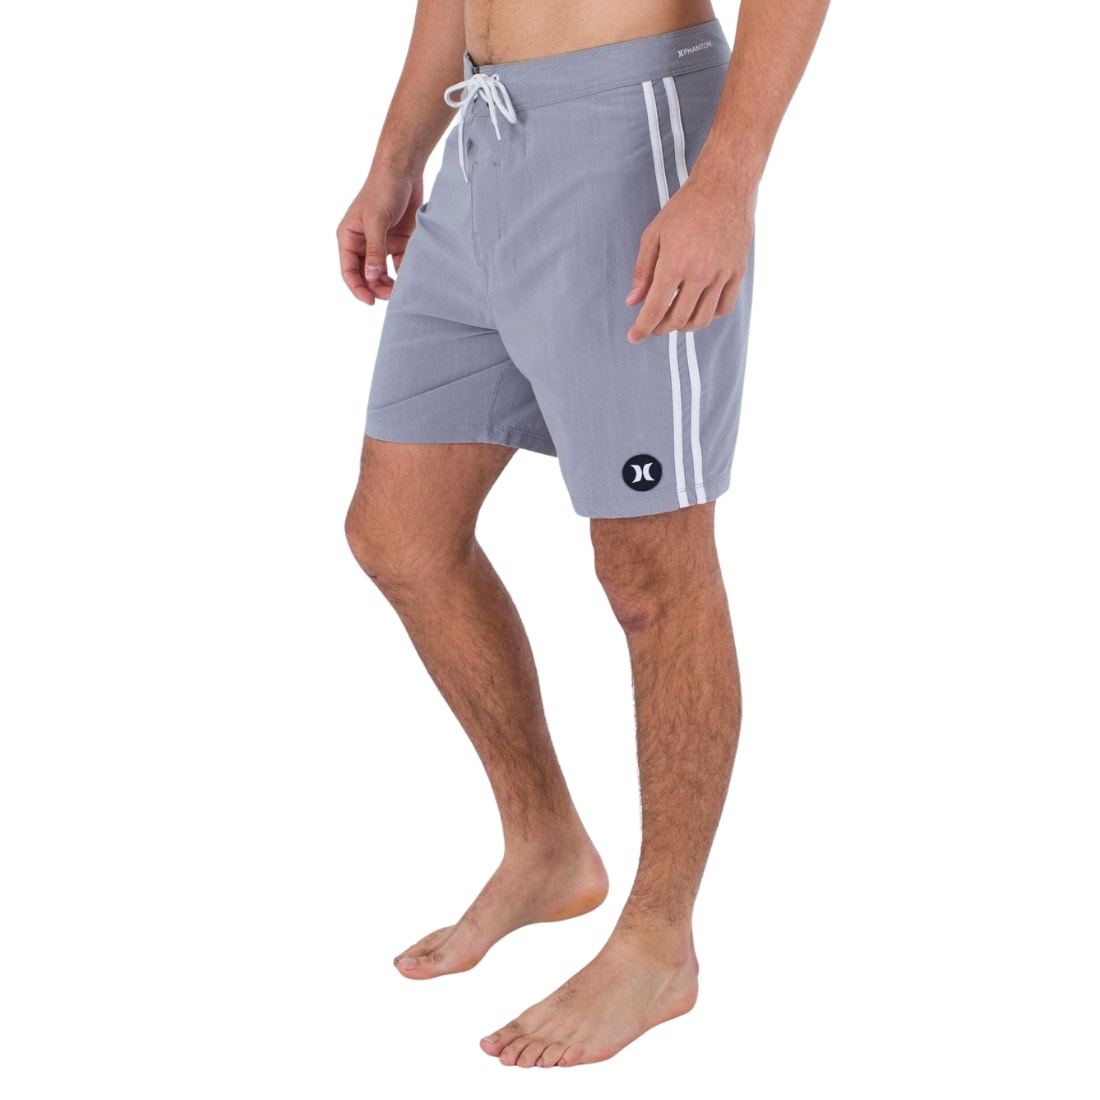 Hurley Phantom Naturals Tailgate Shorts - Particle Grey - Mens Walk Shorts by Hurley